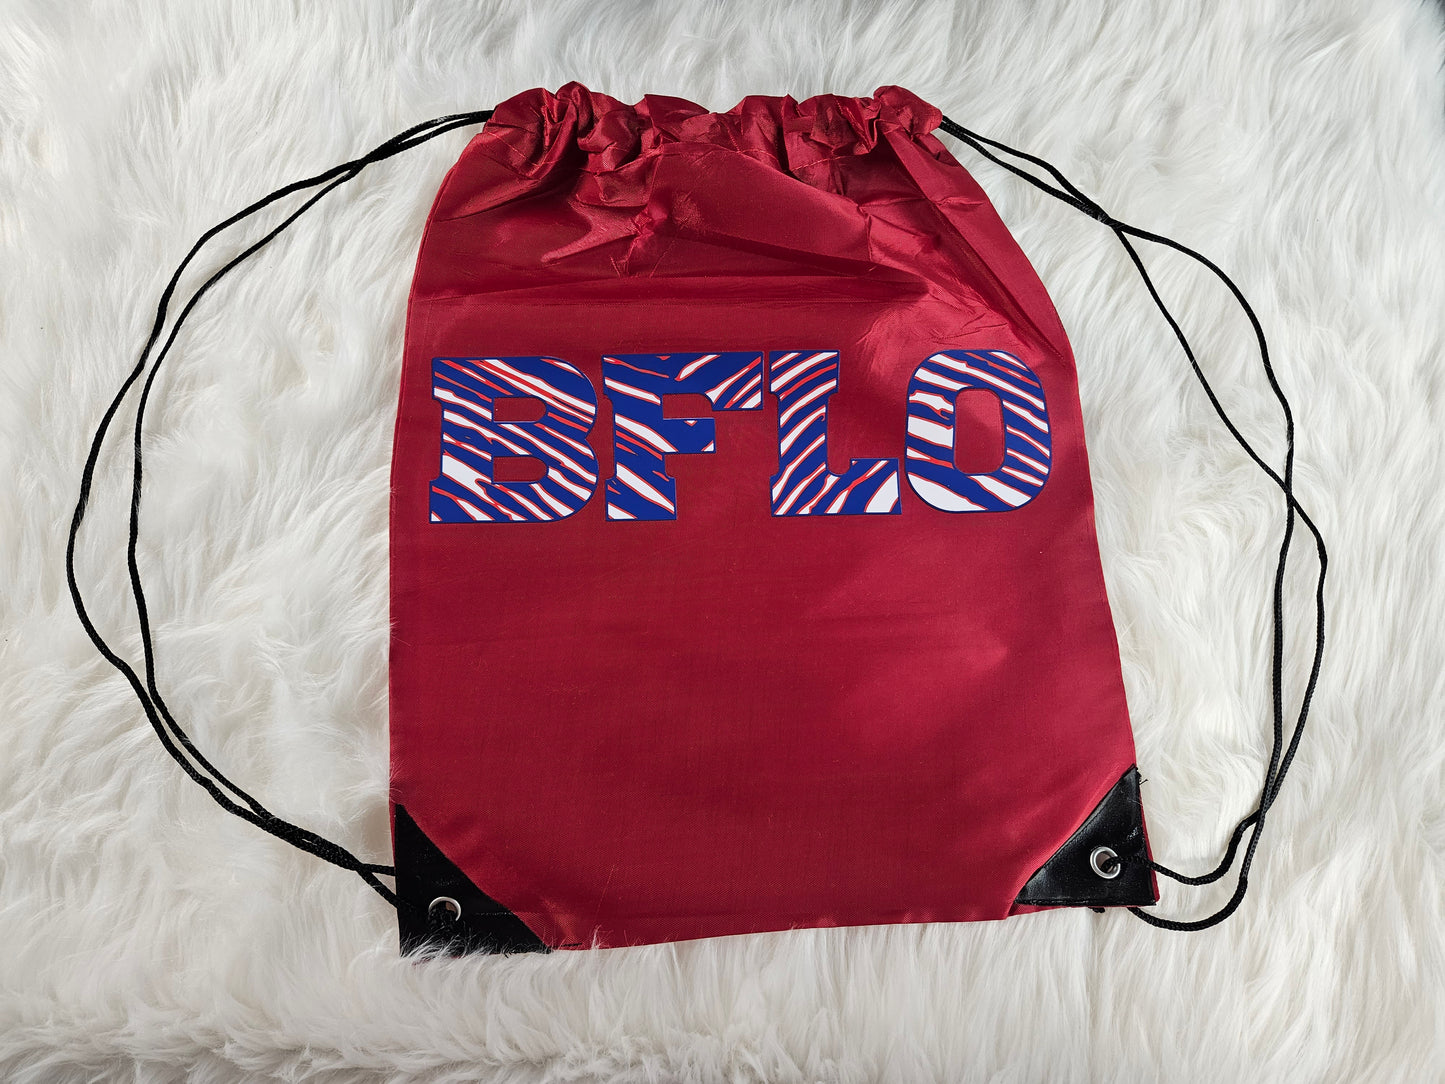 BFLO String Bag